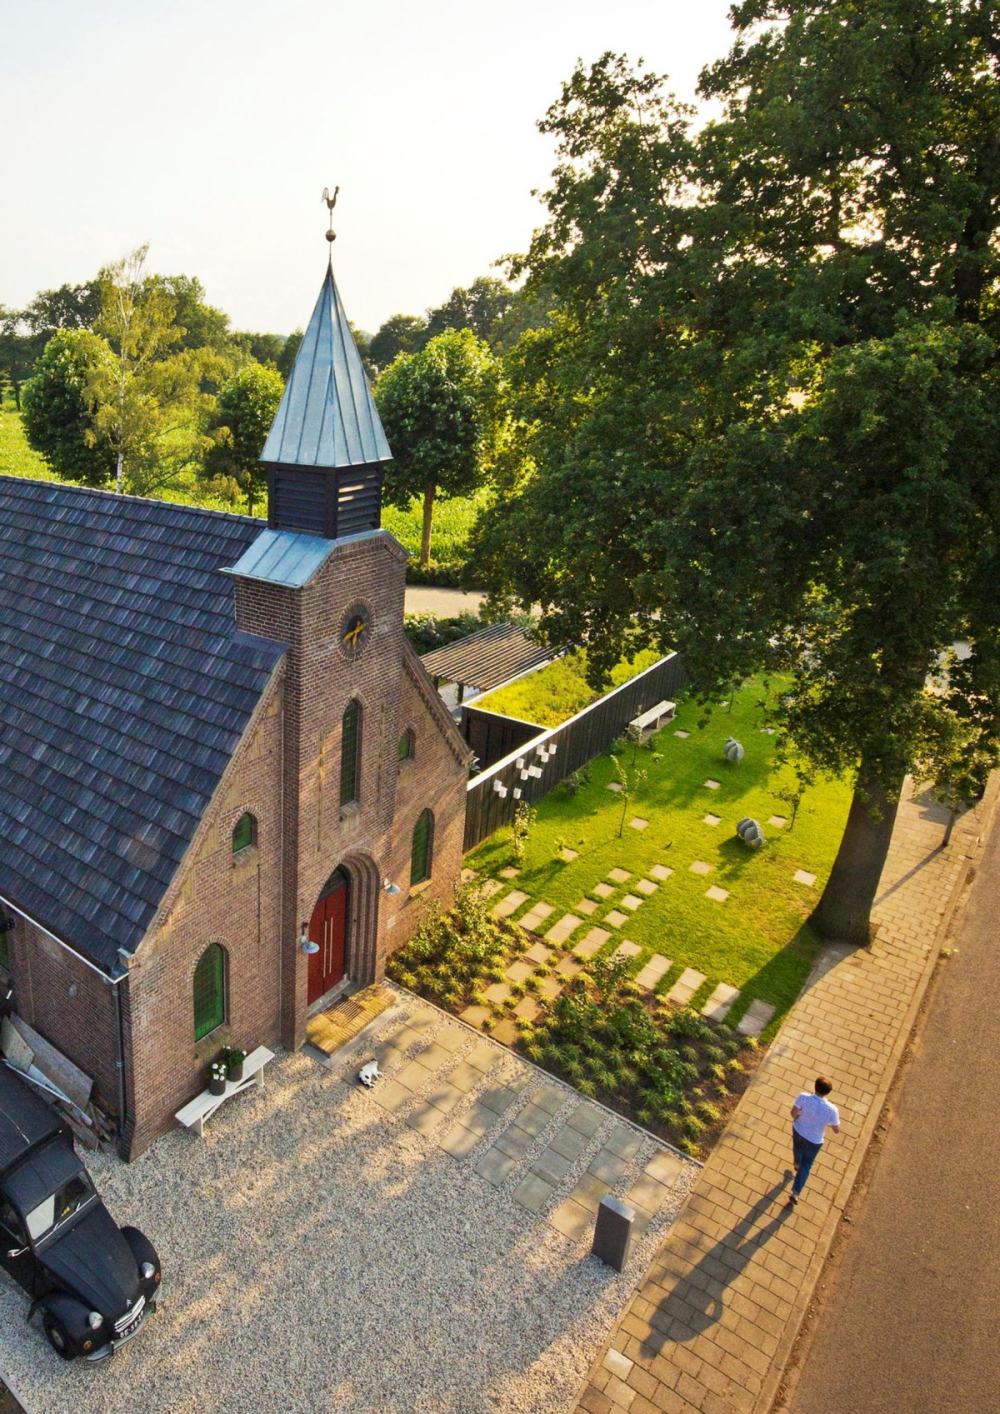 荷兰由教堂改造成的独特LOFT居住空间_gl_191112_03.jpg